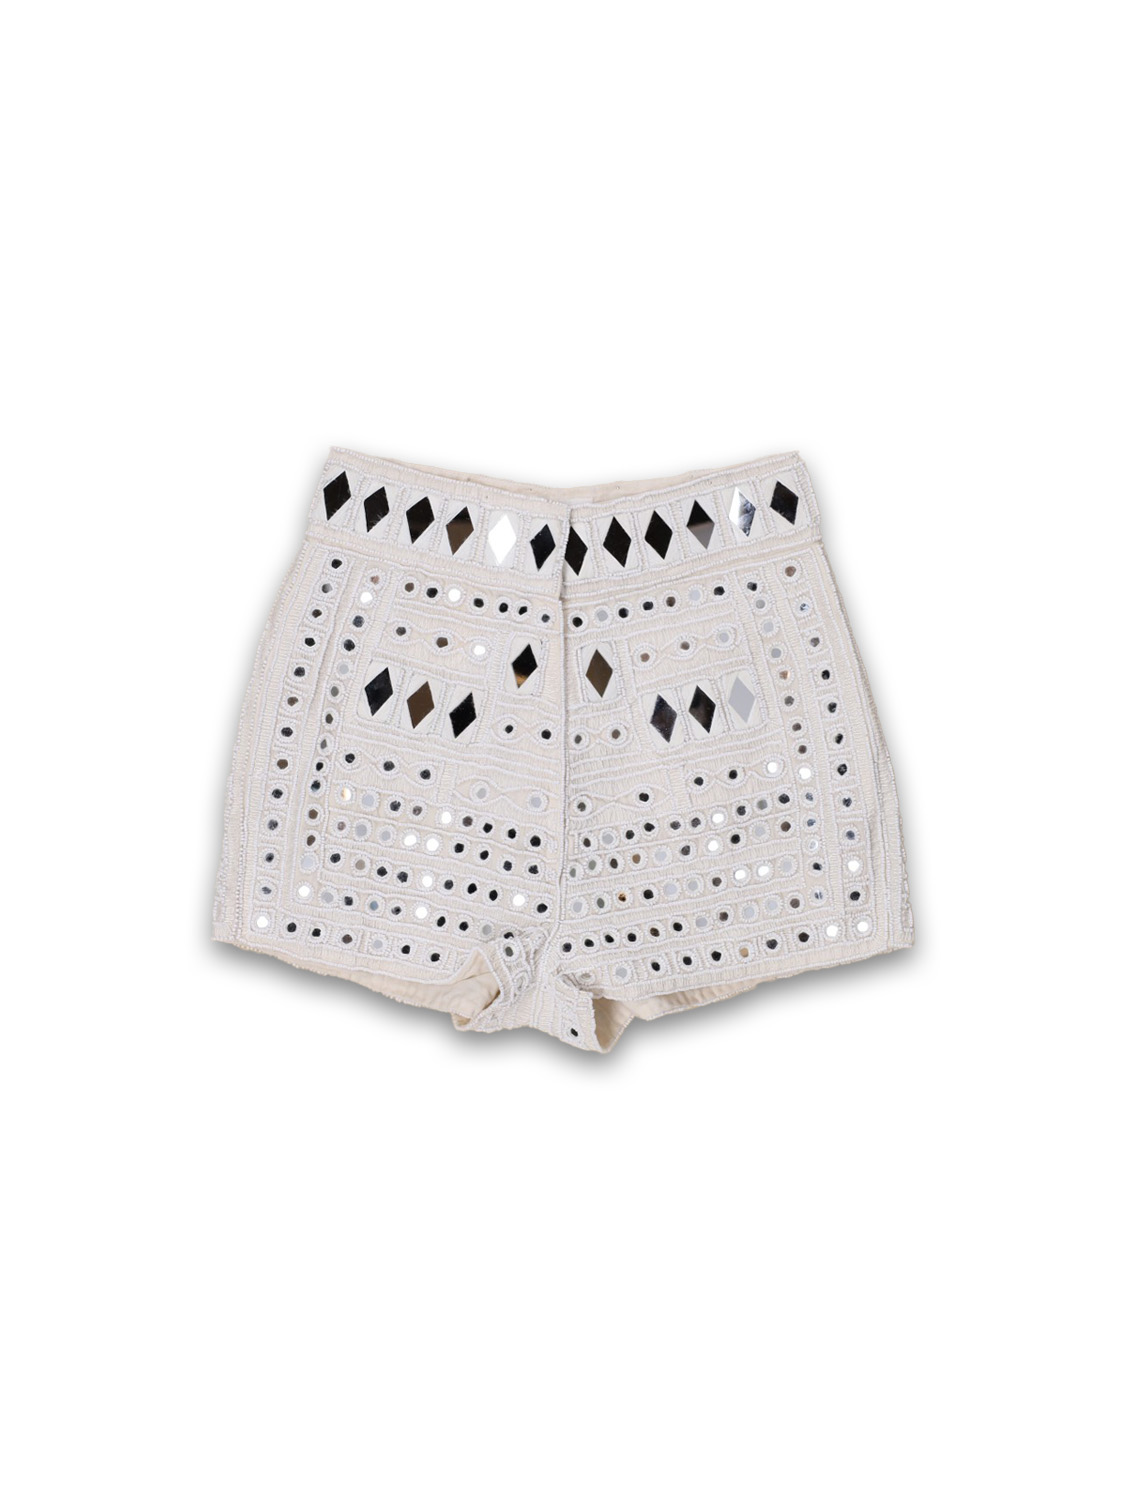 Antik Batik Mahani – Shorts mit Spiegel-Details   creme 38